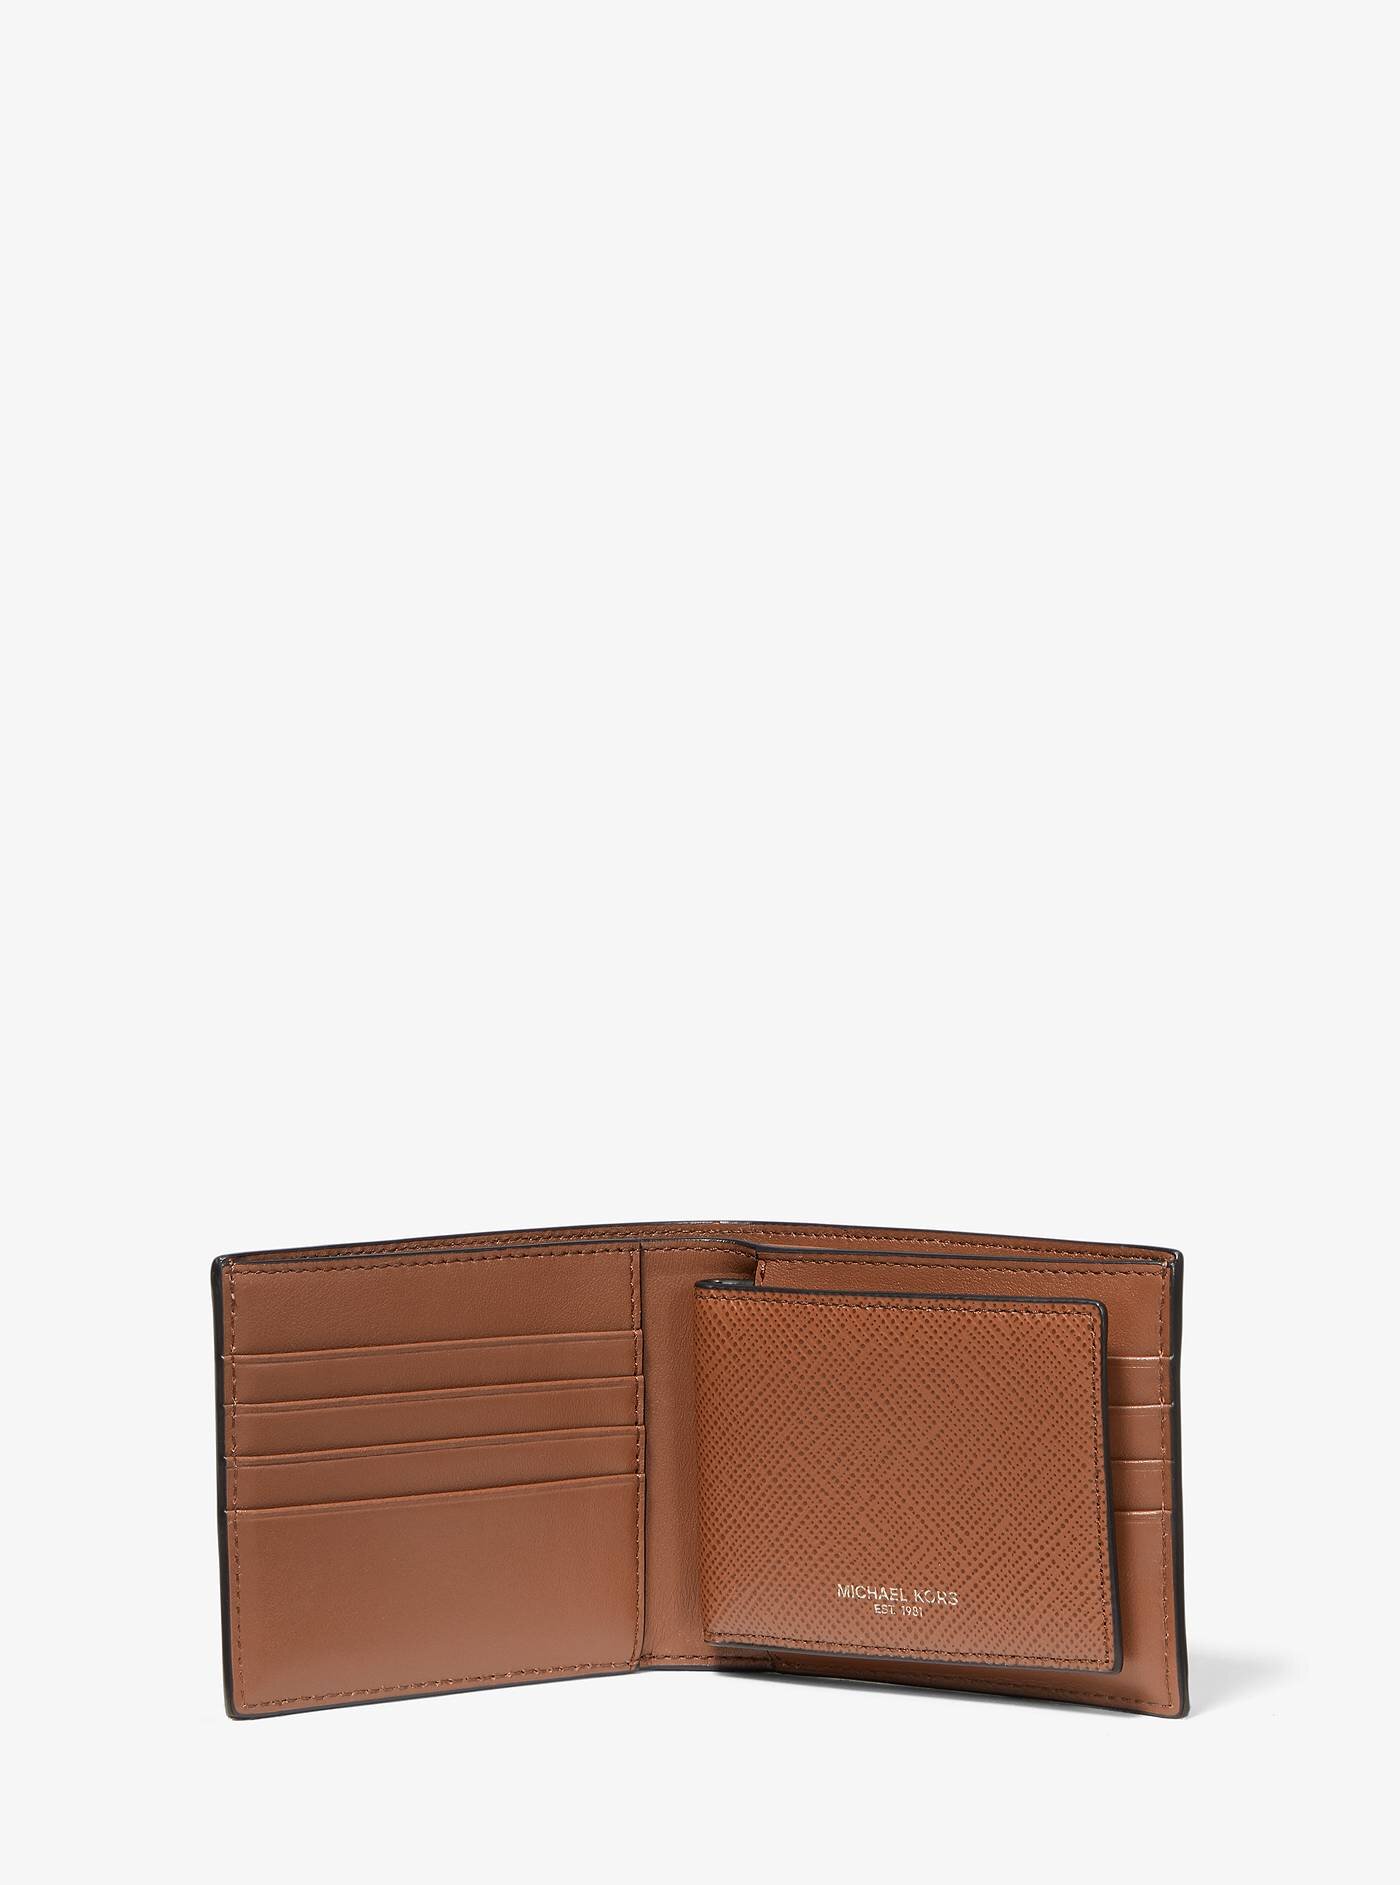 harrison leather billfold wallet